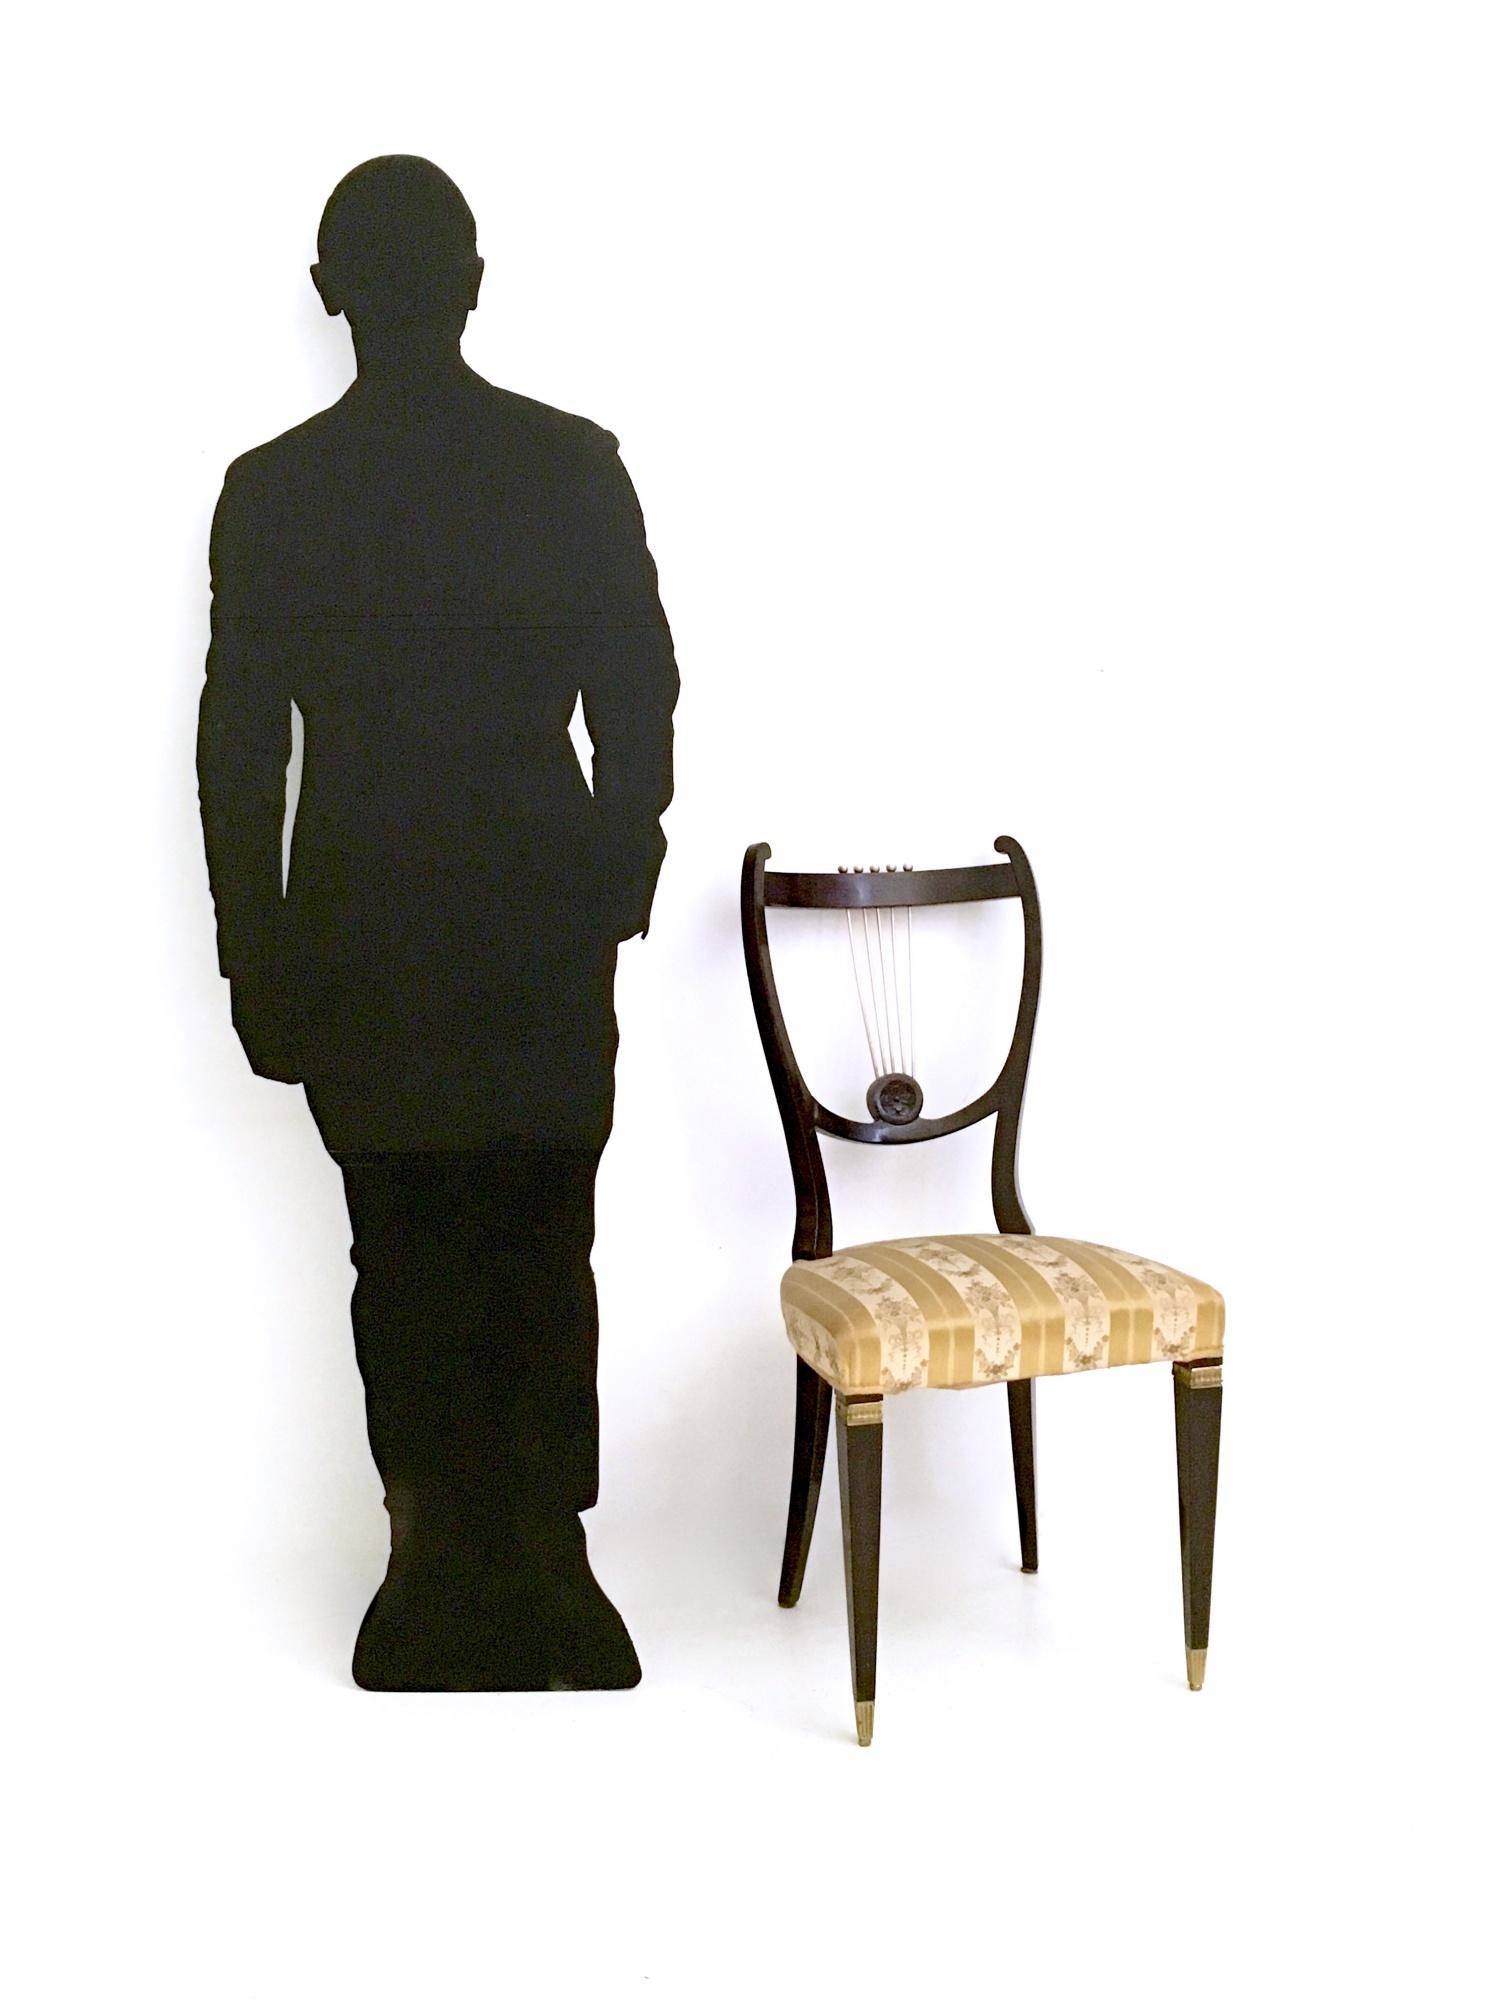 Fabriqué en Italie, années 1940 - 1950.
Ces chaises présentent une structure en hêtre avec des détails en laiton et en bronze. 
Leur cadre est en très bon état d'origine, mais la tapisserie est d'origine et en état discret. Ils ont besoin d'être